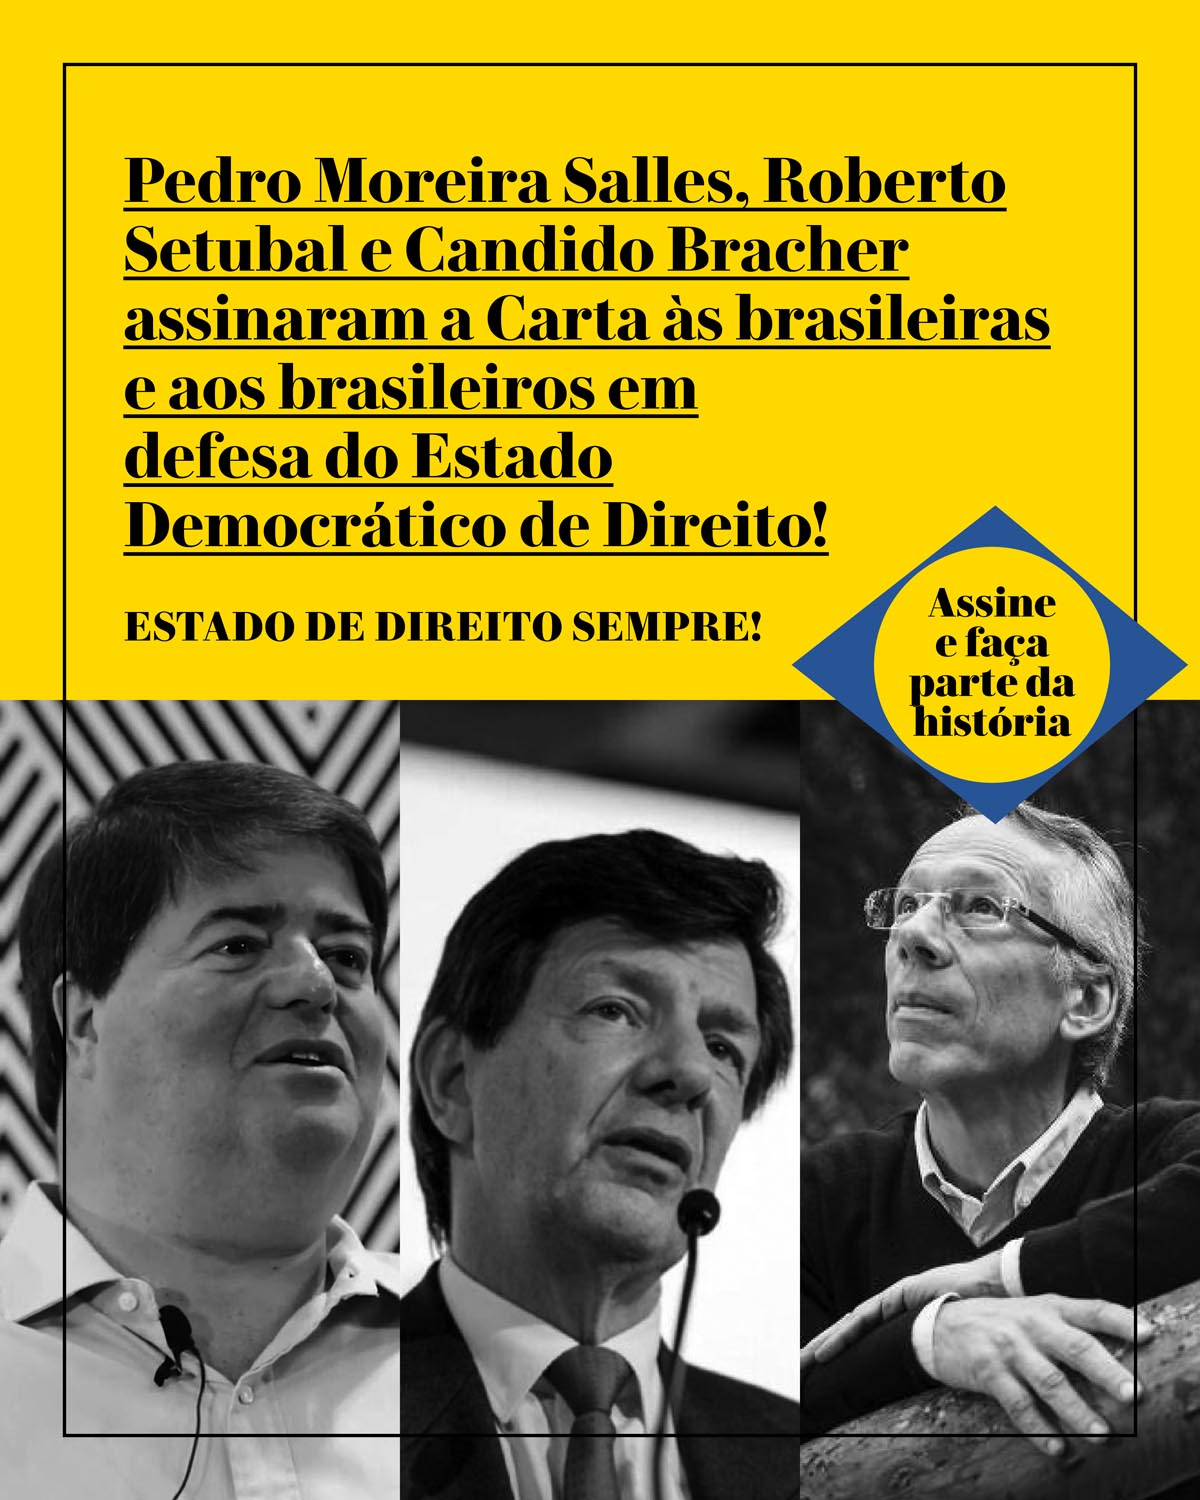 Pedro Moreira Salles, Roberto Setubal e Candido Bracher assinaram a Carta às brasileiras e aos brasileiros em defesa do Estado Democrático de Direito!